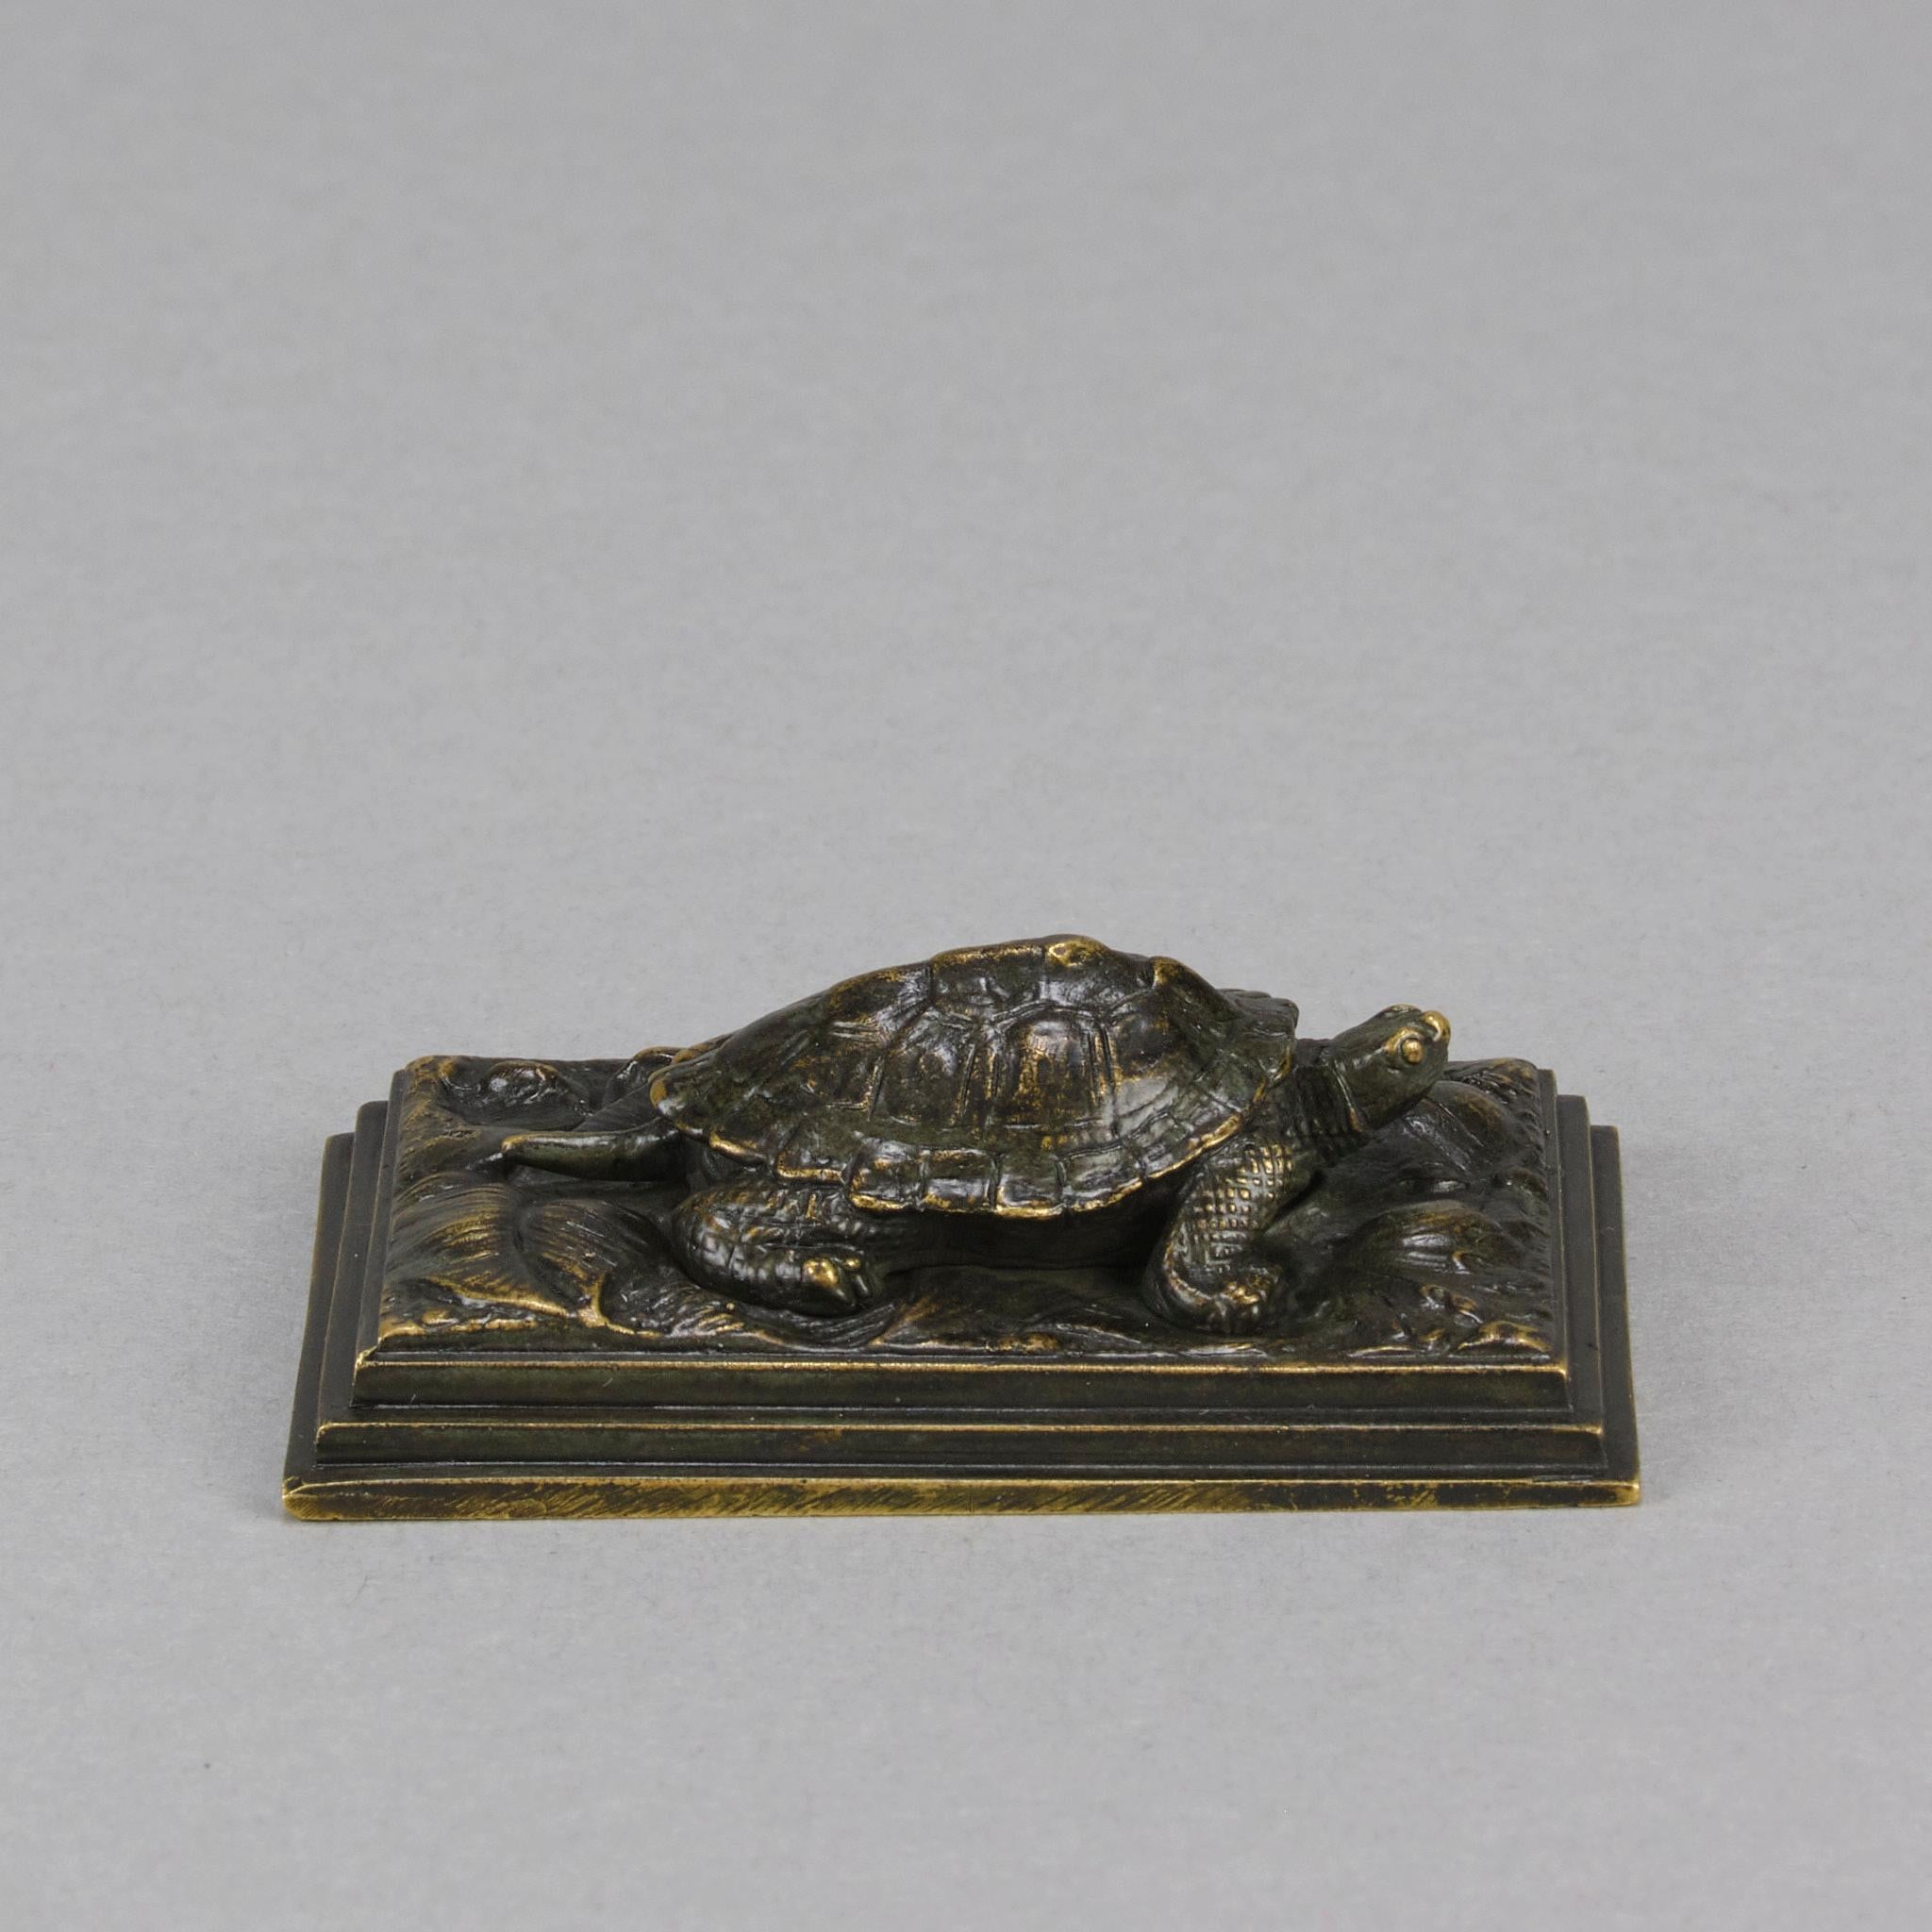 Eine reizvolle Mitte des 19. Jahrhunderts Französisch Bronze-Figur einer Schildkröte mit ausgezeichneter Hand ziseliert Oberfläche deail und sehr feine reiche braune Patina zu einem goldenen Farbton in Bereichen gerieben, auf einem abgestuften Basis